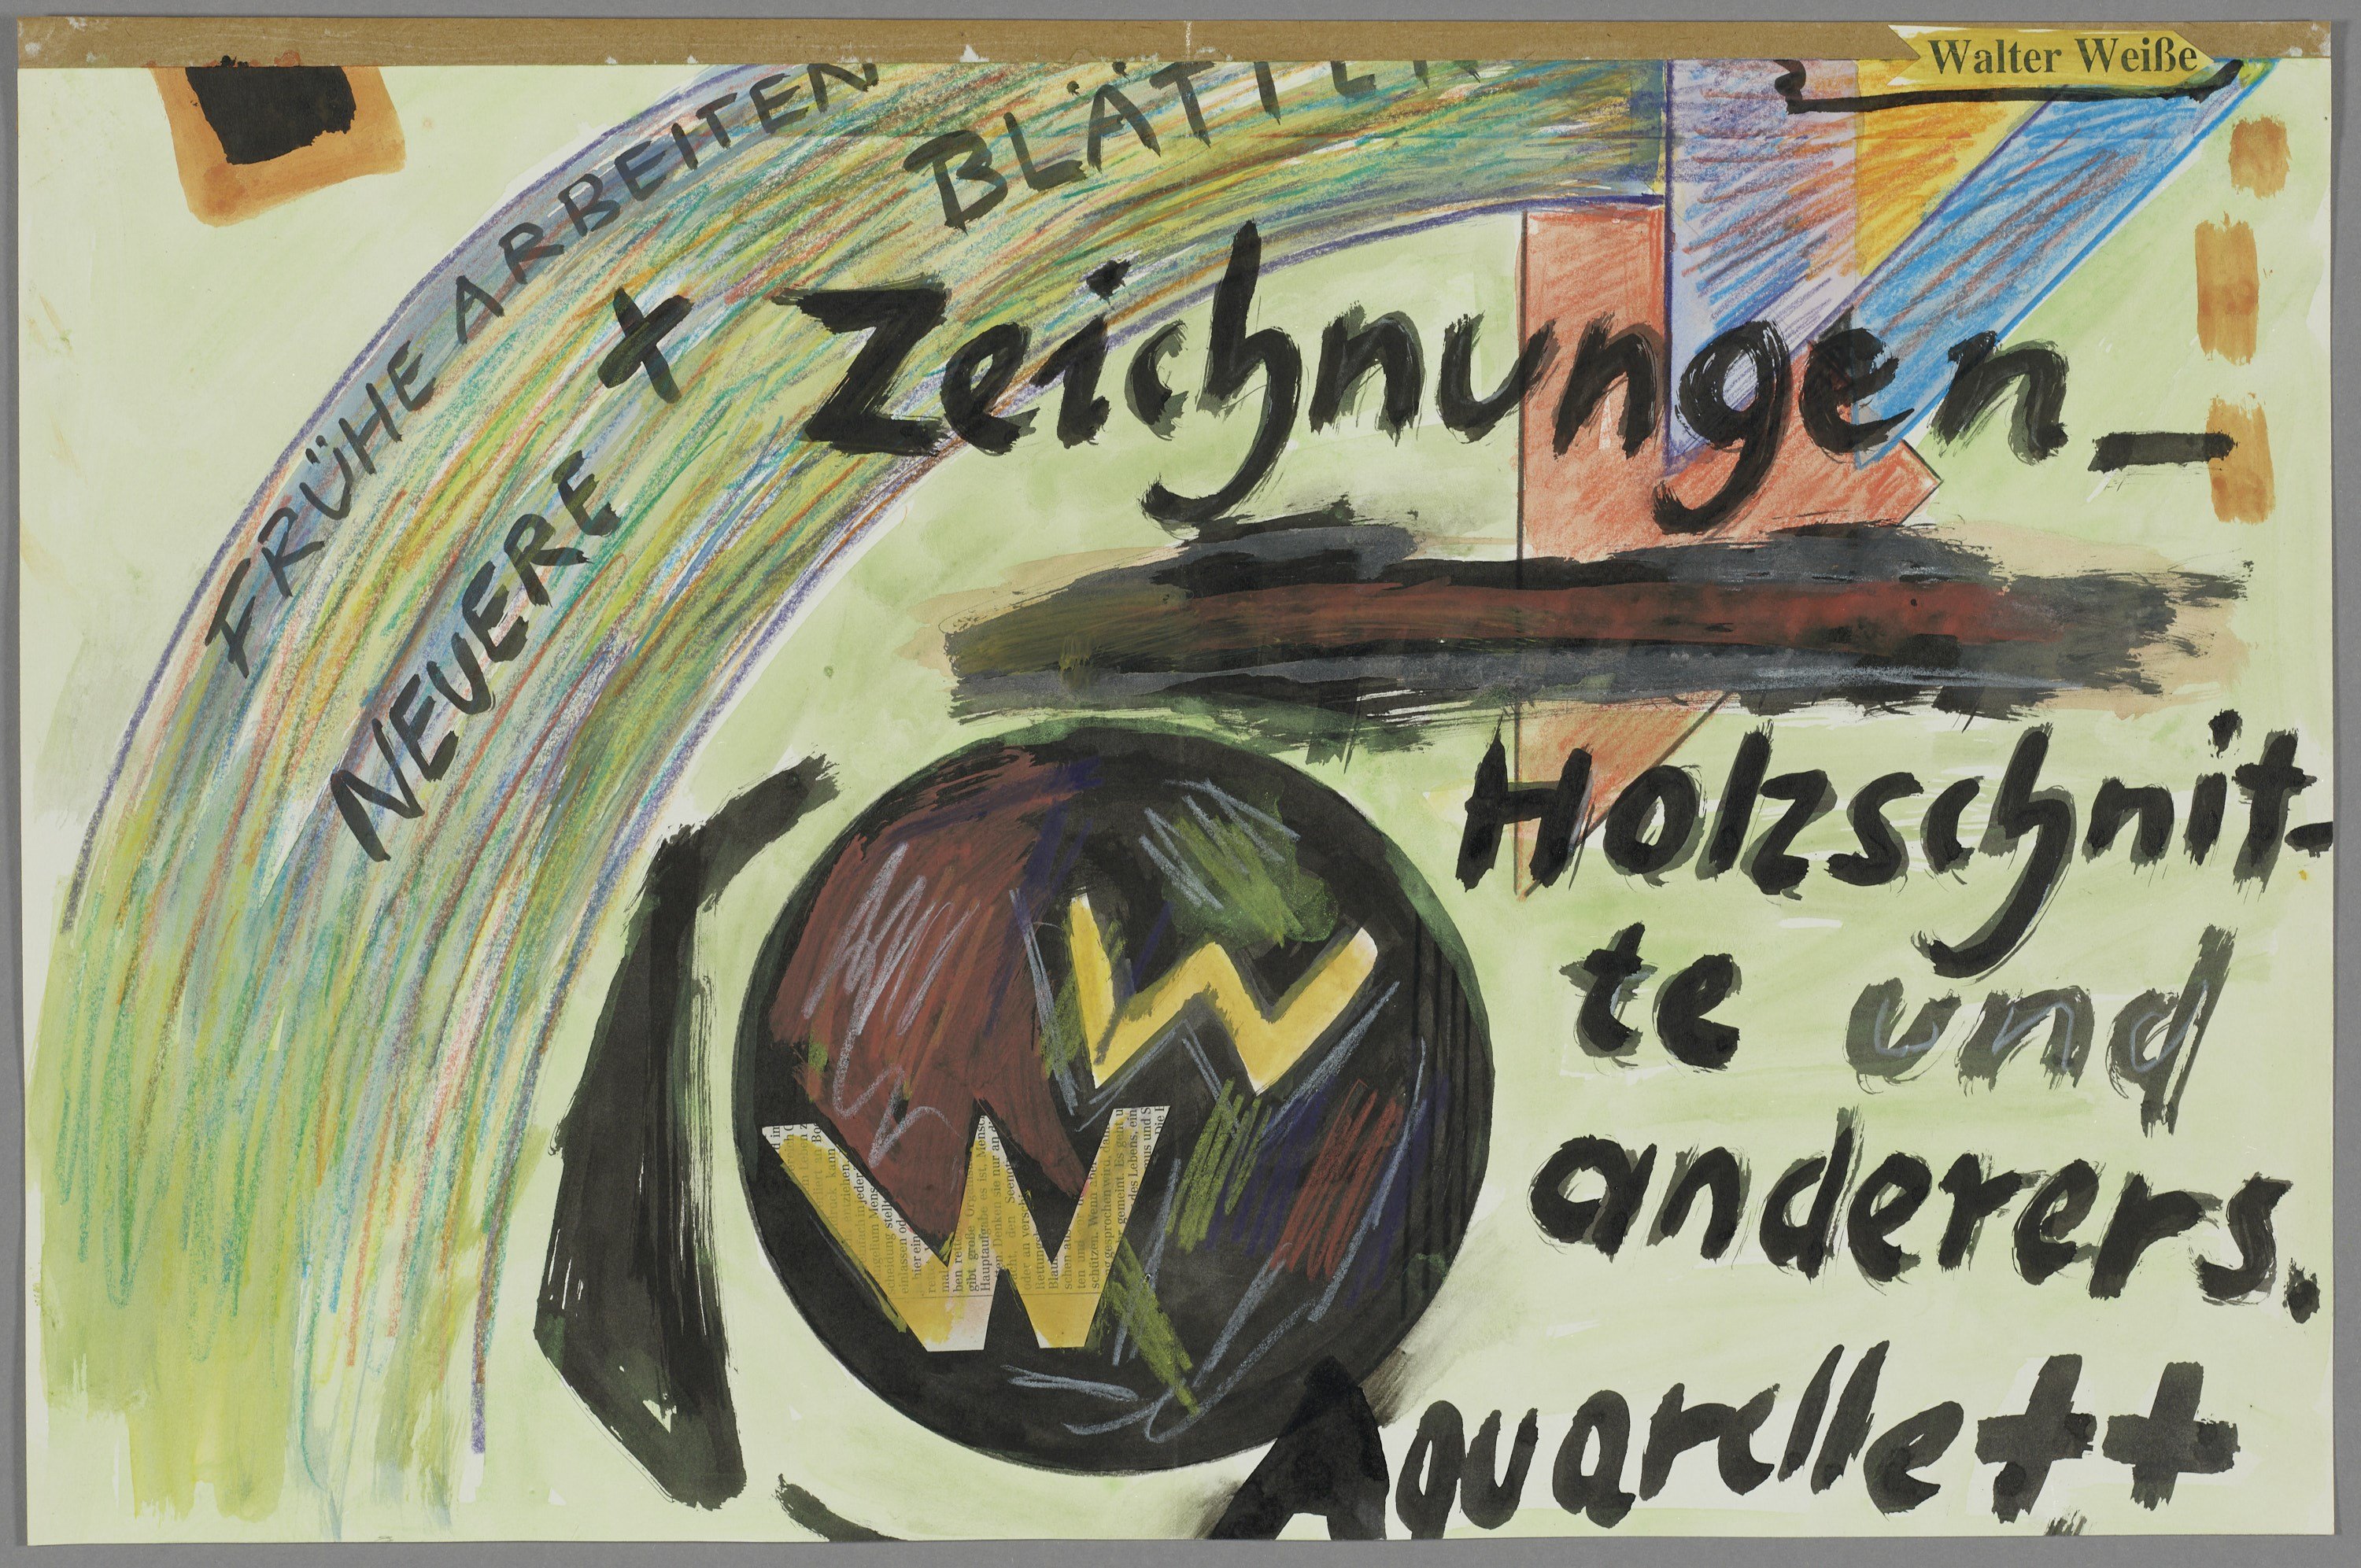 Walter Weiße - Zeichnungen - Holzschnitte und anderes (Fragment, unterer Teil) (Kulturstiftung Sachsen-Anhalt CC BY-NC-SA)